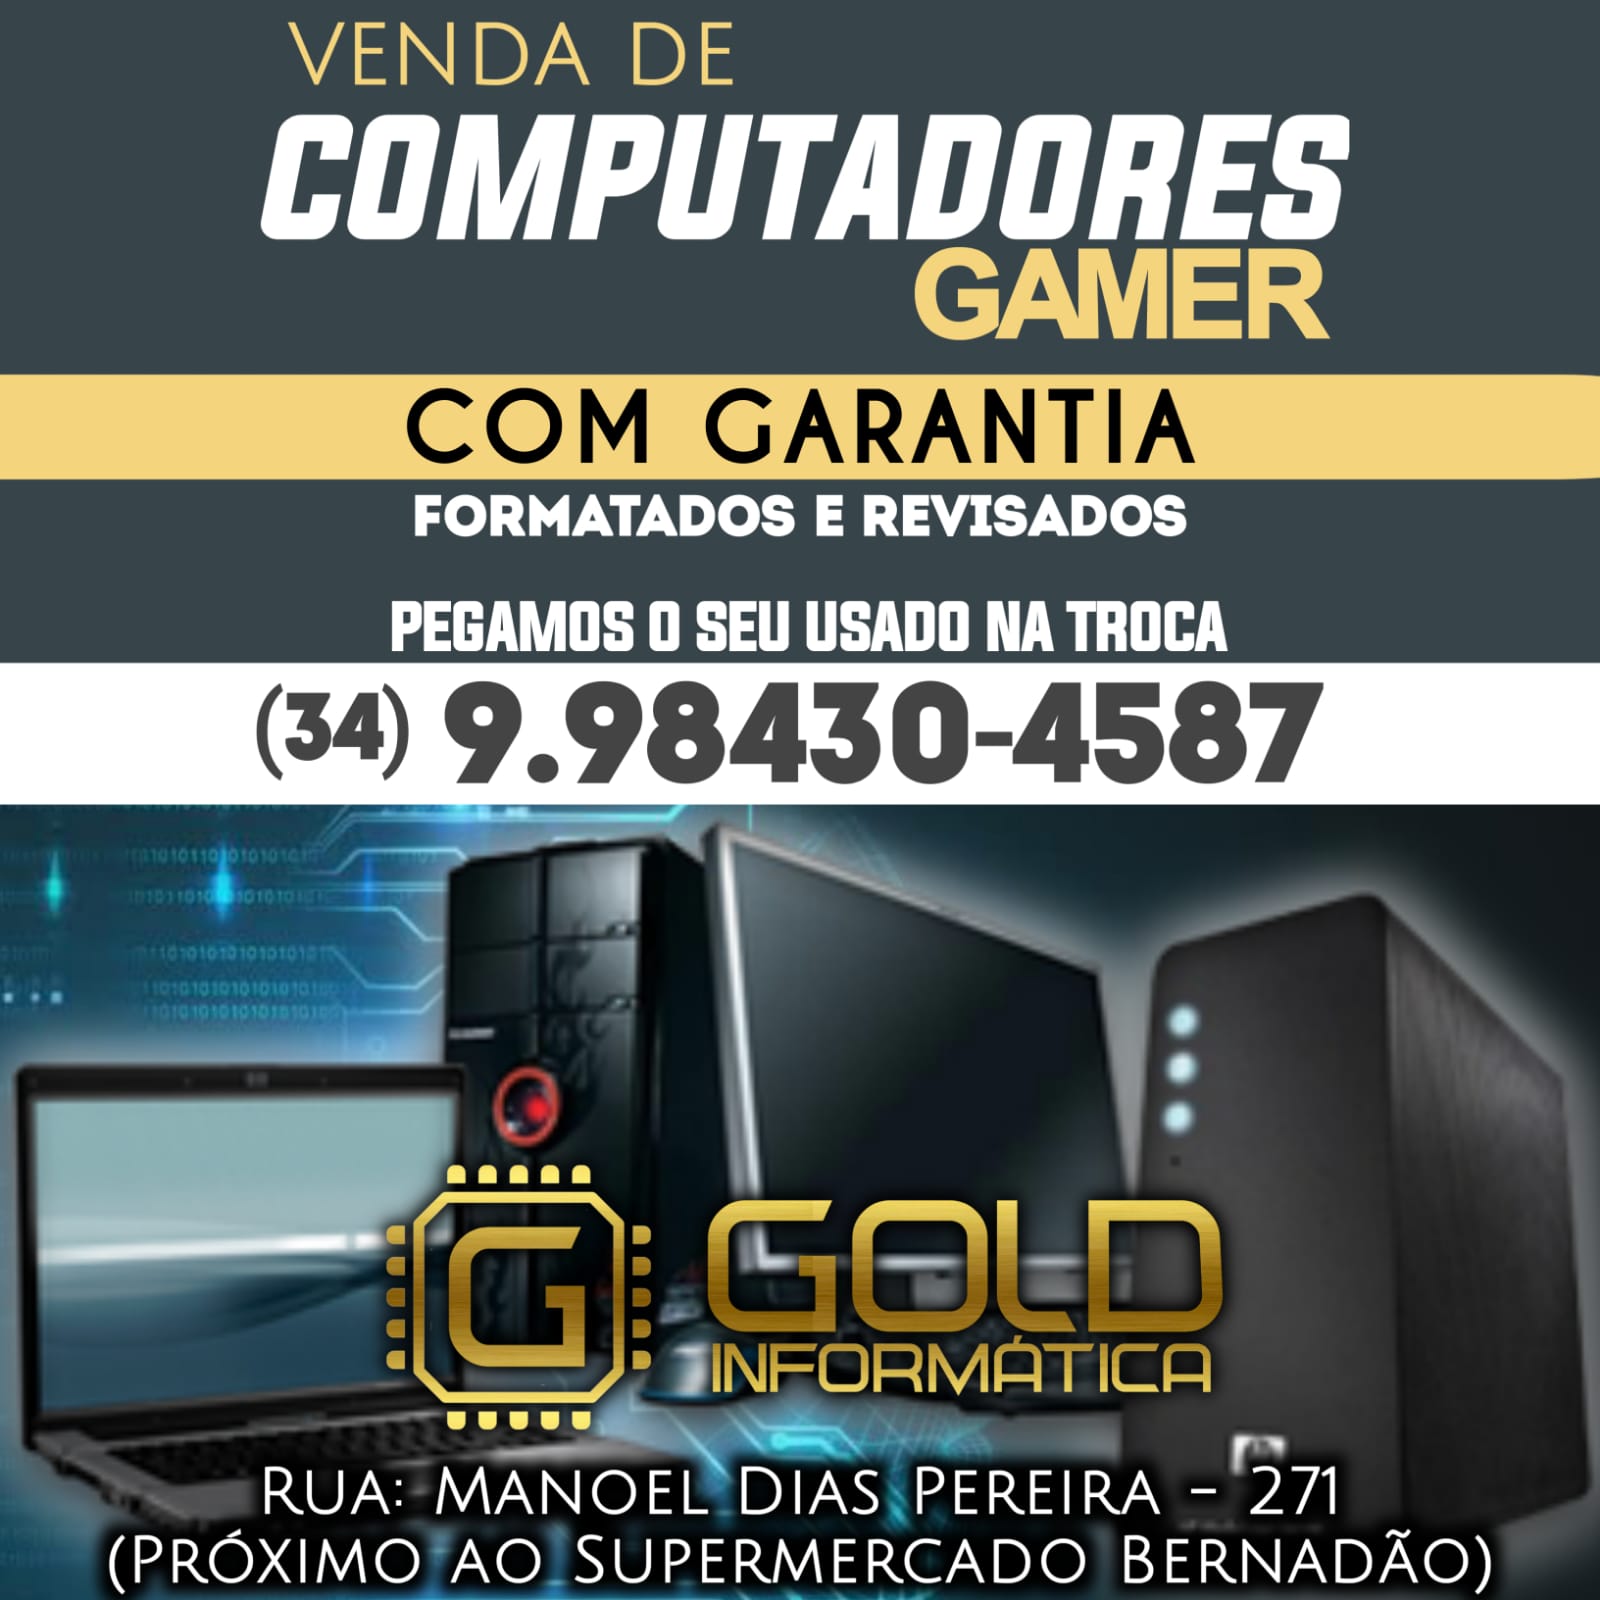 Gold informática vende: Computadores para escritório, estudos ou gamers